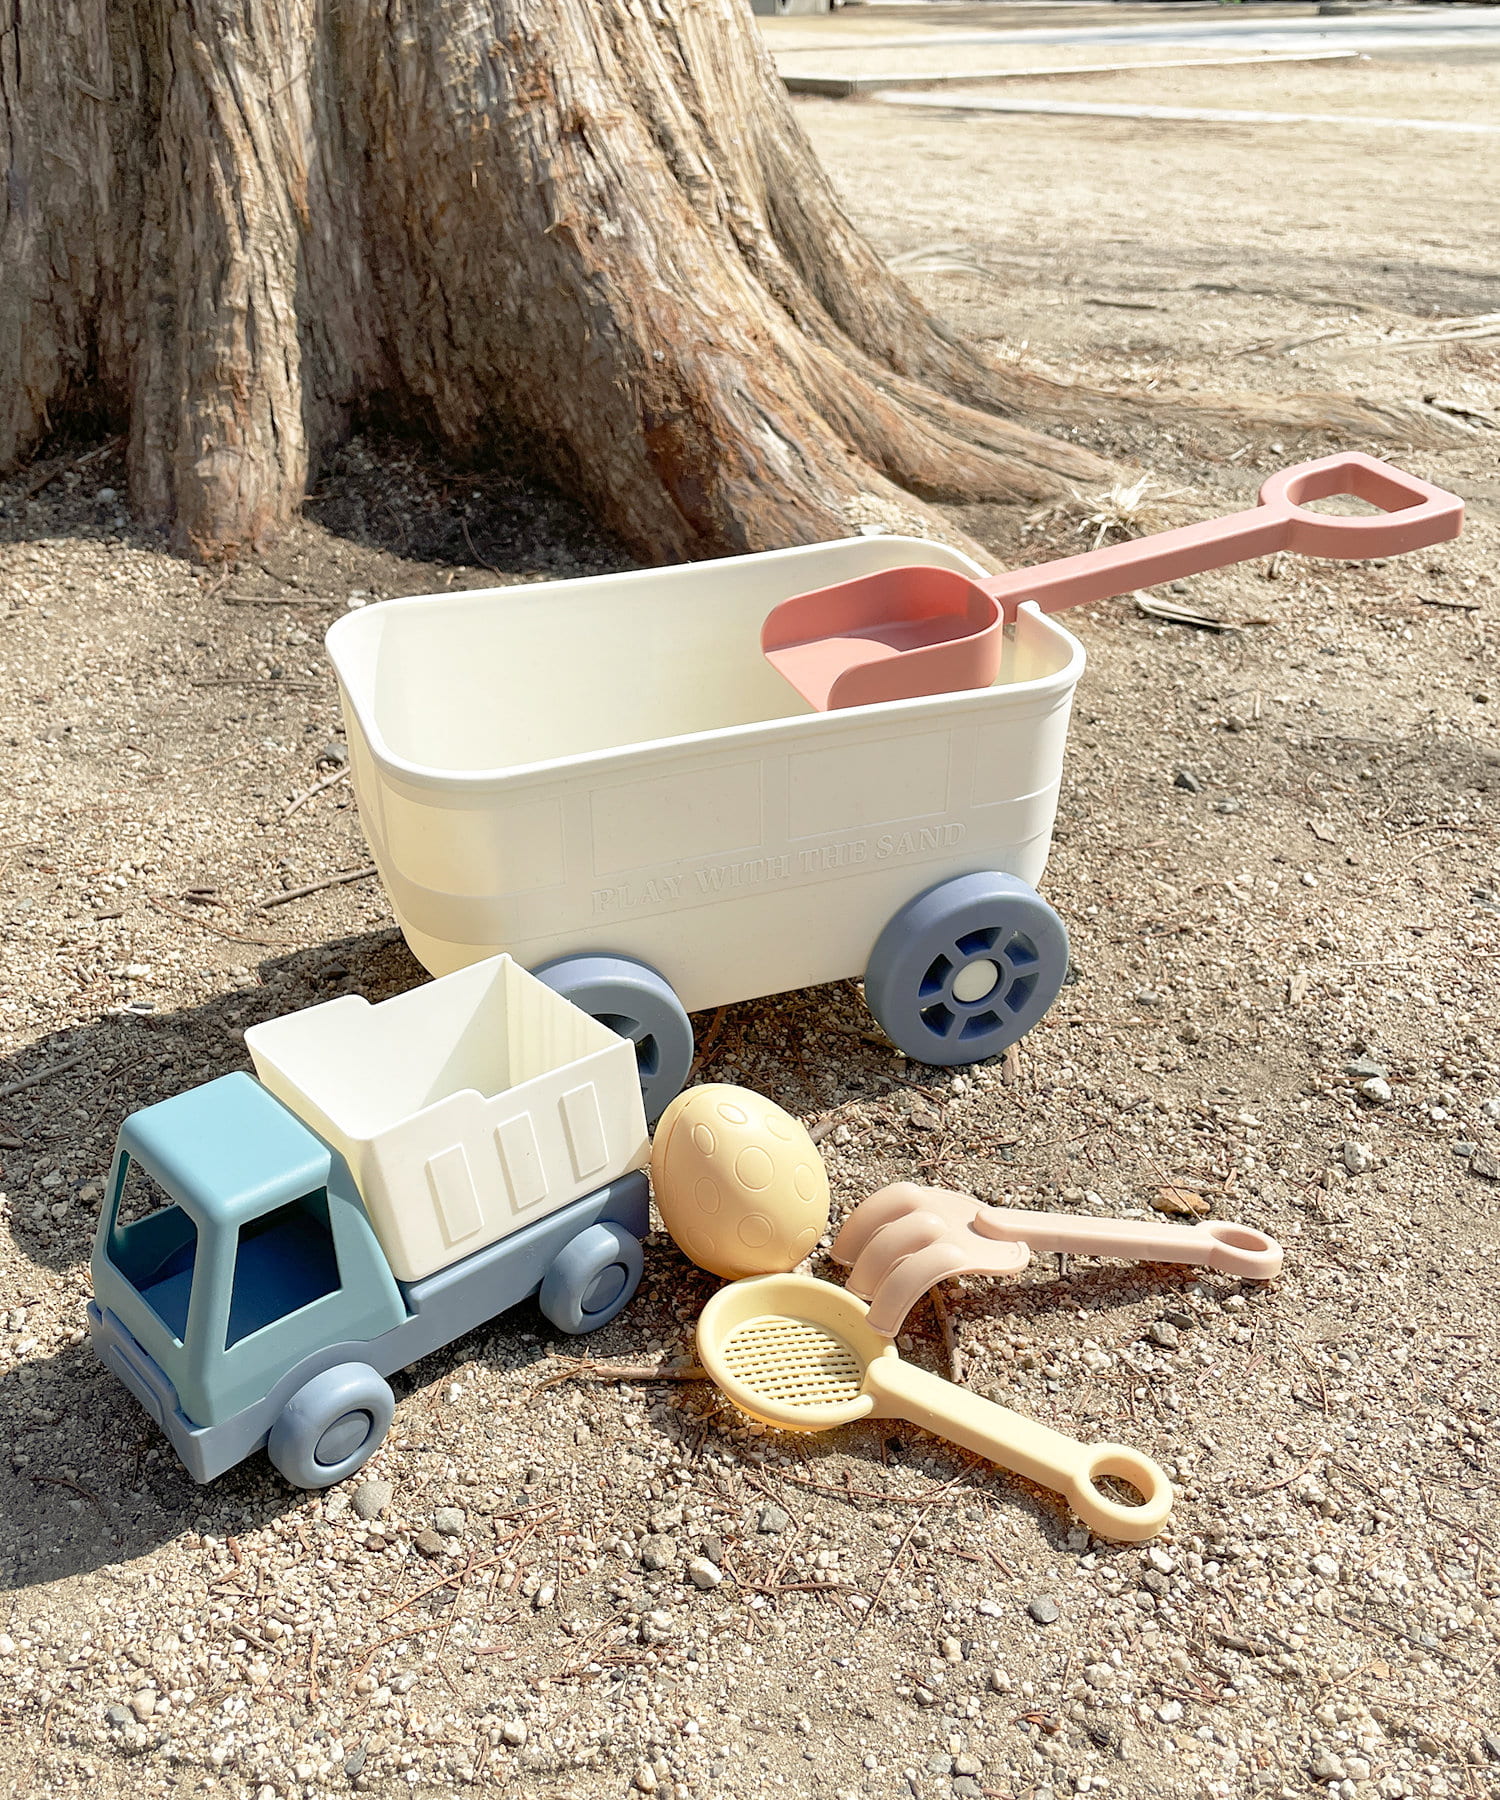 アイスクリームバケツセット おもちゃ 砂場 セット くまで スコップ 砂遊び 玩具 おすすめ ラッピング